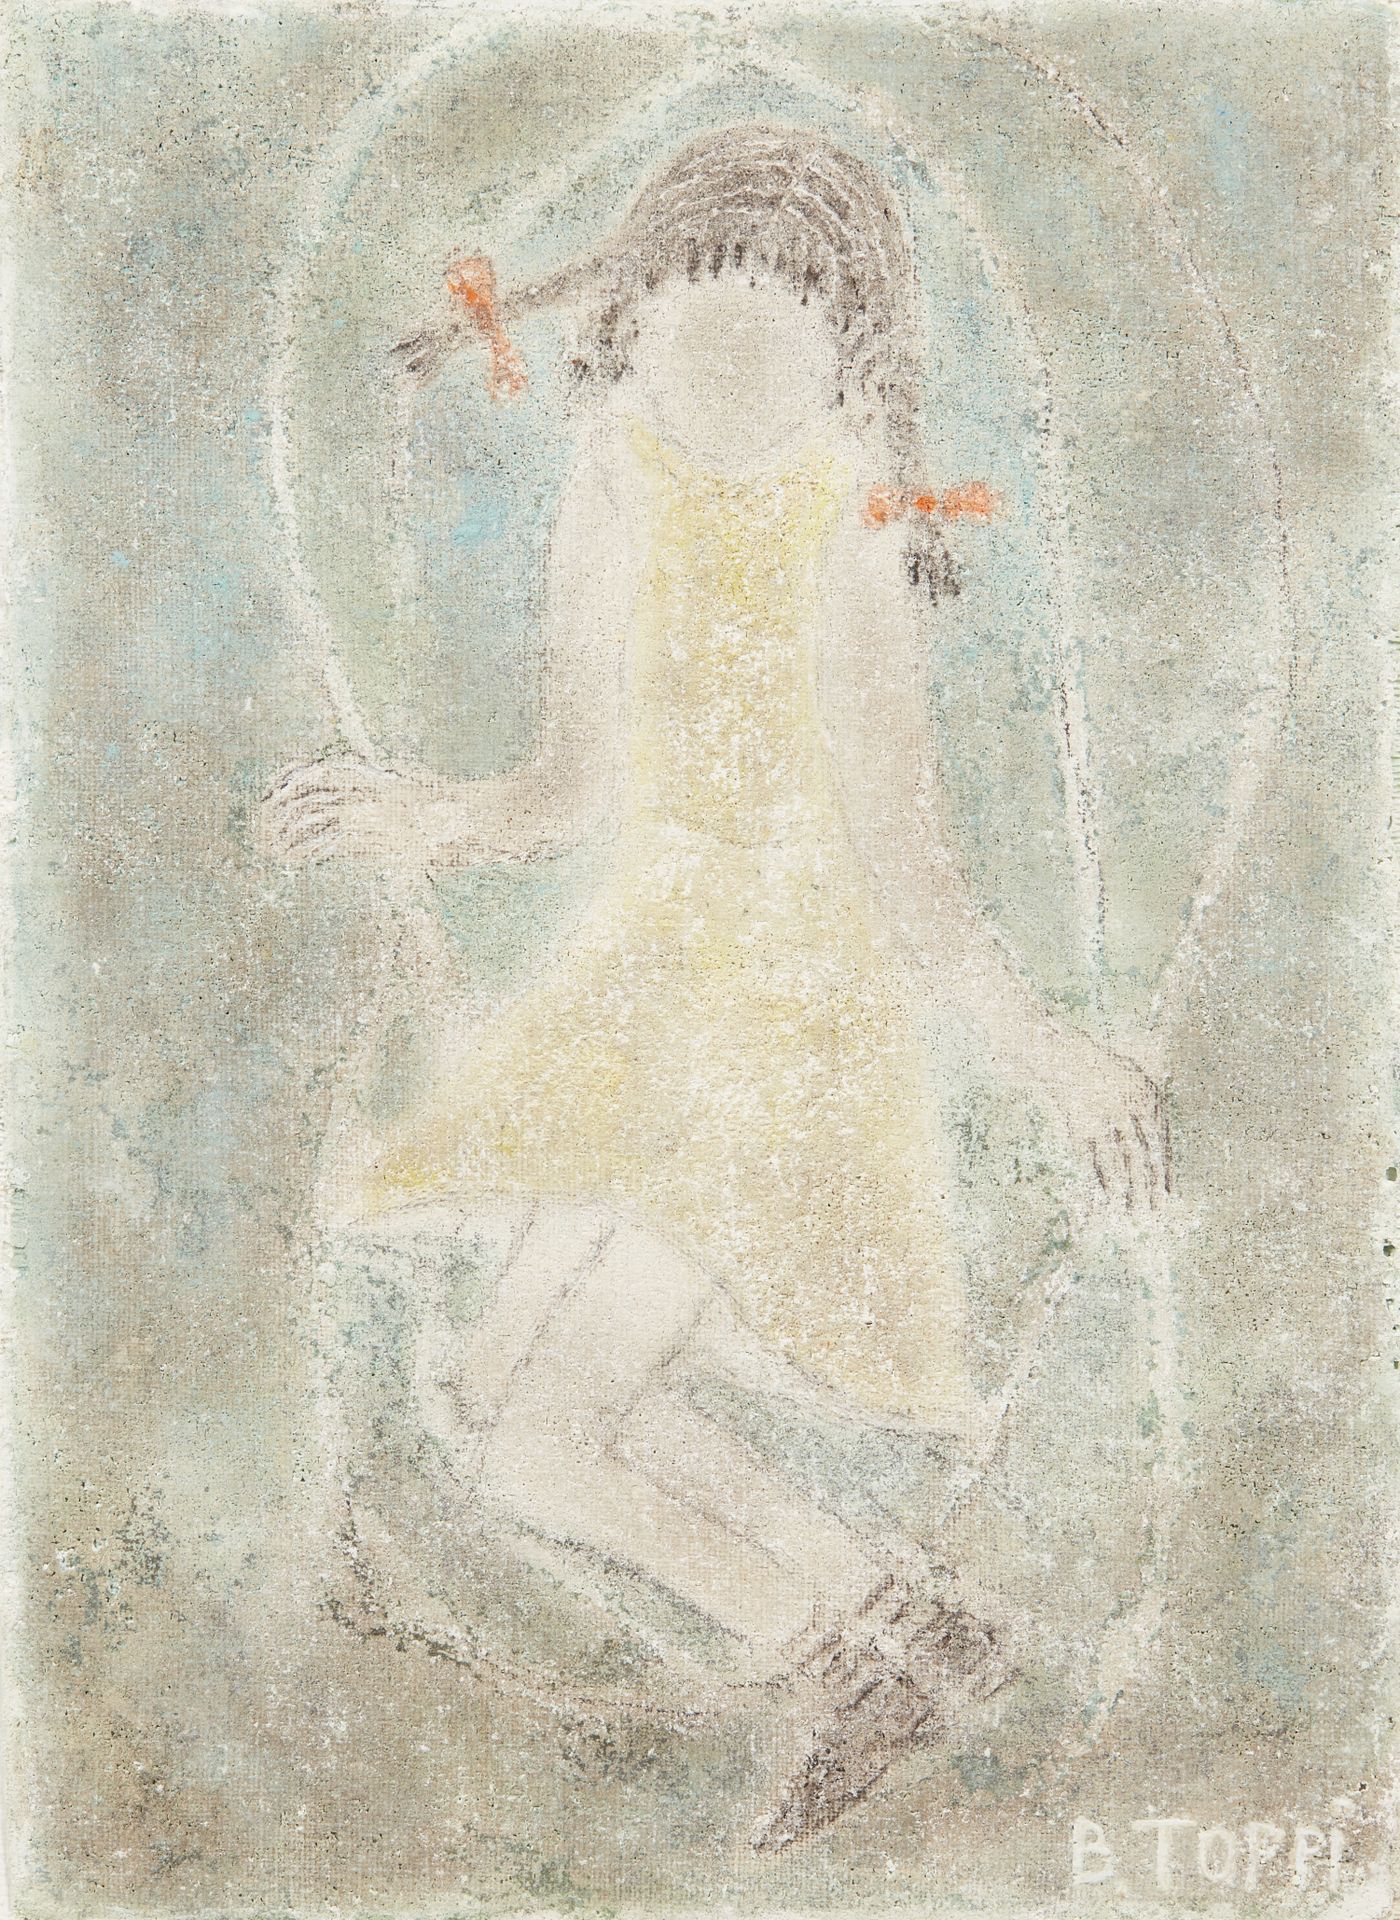 Null 贝纳迪诺-托皮（生于1936年）
小女孩用跳绳
粘贴在画布上的油画，右下方有签名 
39 x 31 cm